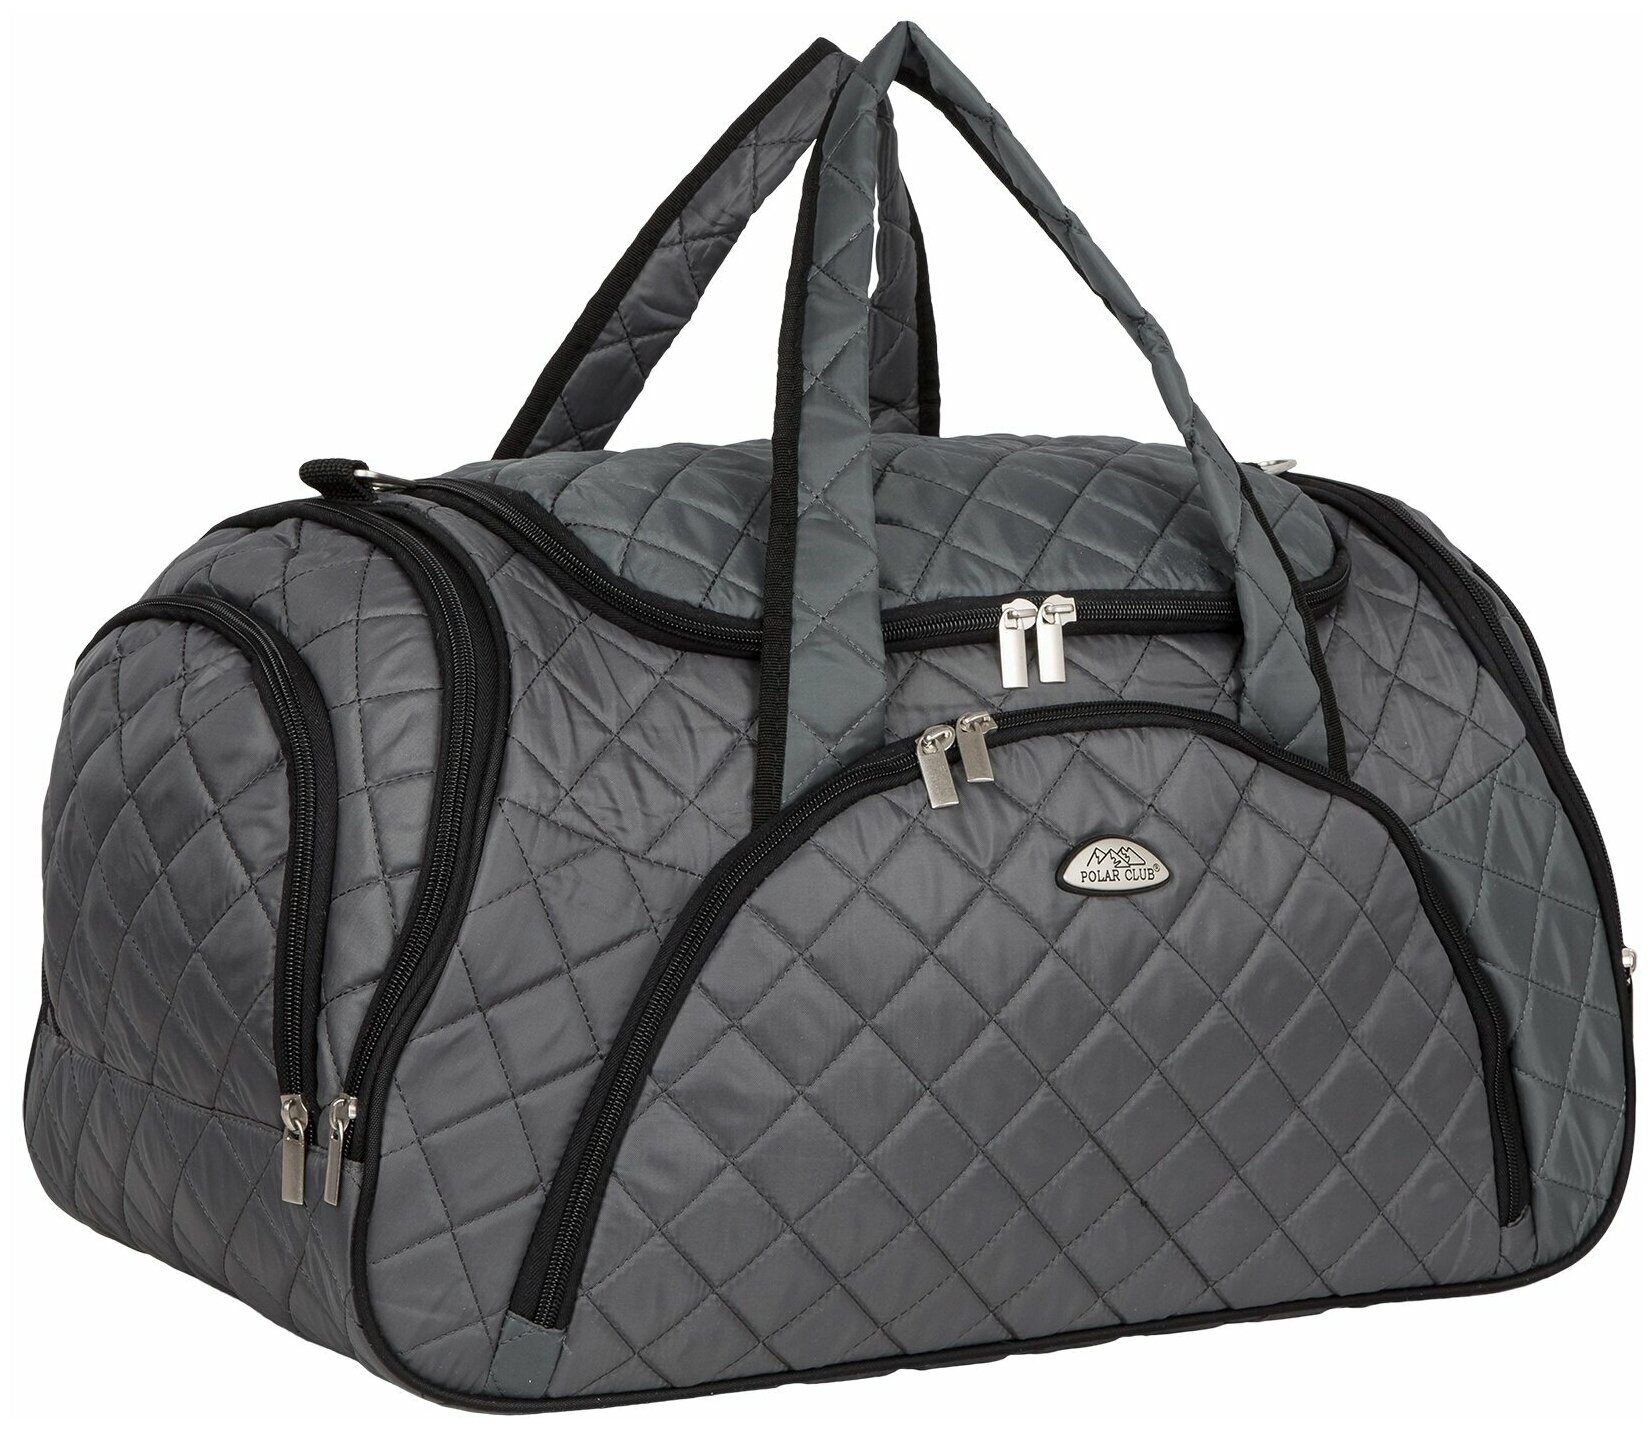 Дорожная сумка, спортивная сумка POLAR, сумка на плечо, ручная кладь, стёжка П7091 серая